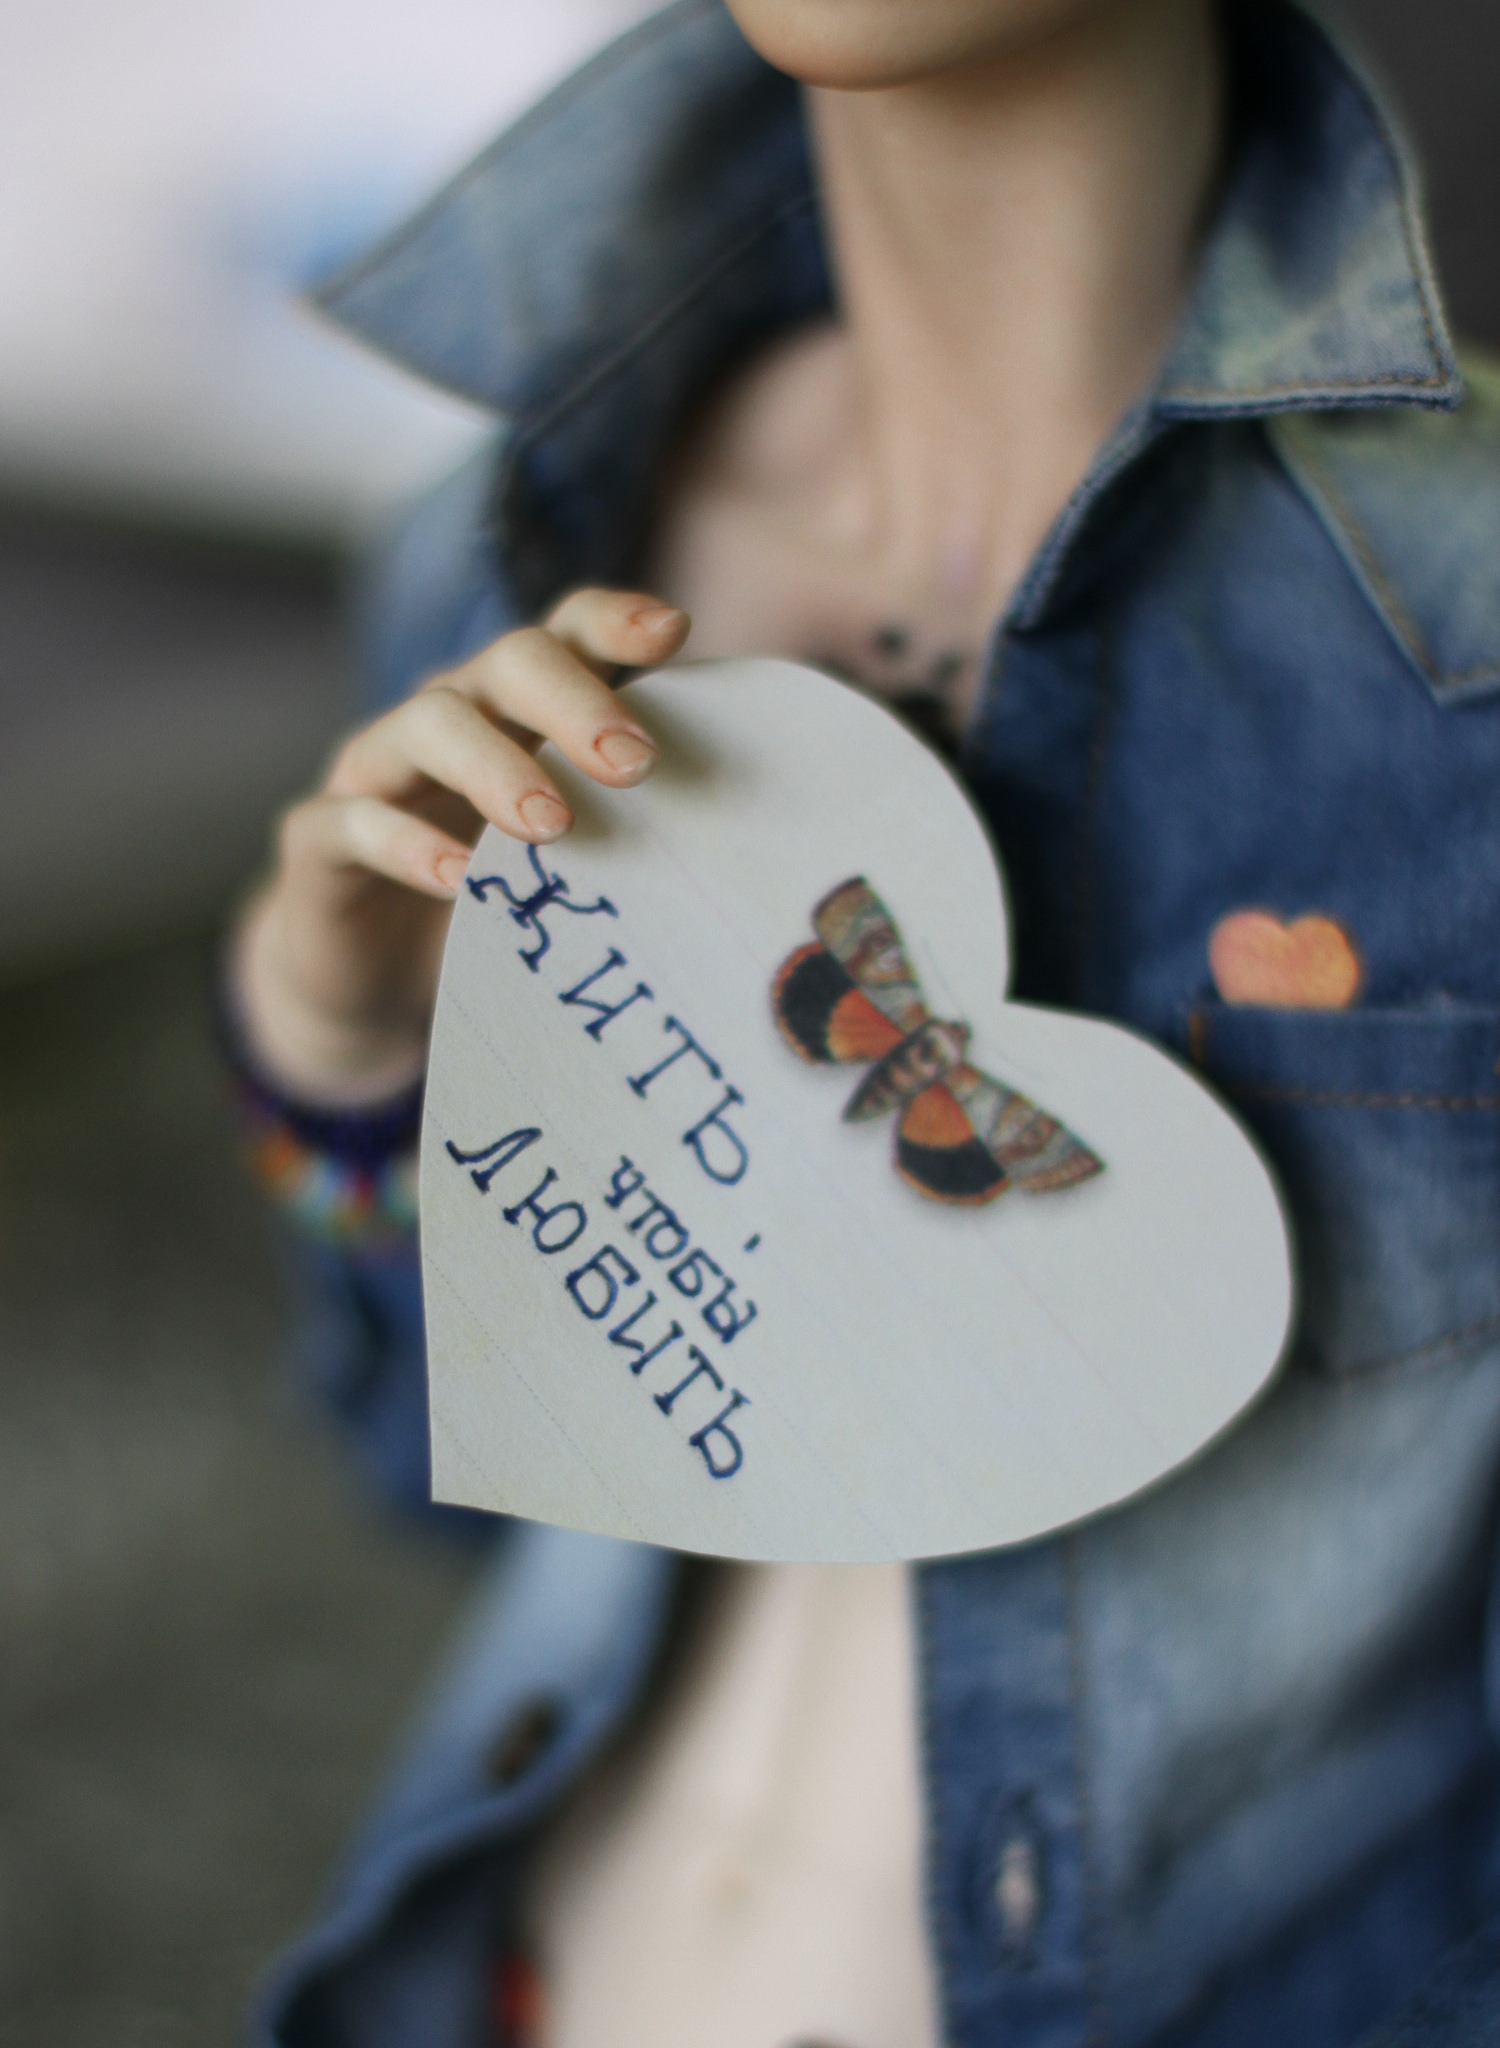 발렌타인데이 카드 메시지: "모든 사람의 삶의 이유는 바로 사랑을 위해서다". 출처: Natasha N/ Flickr.com